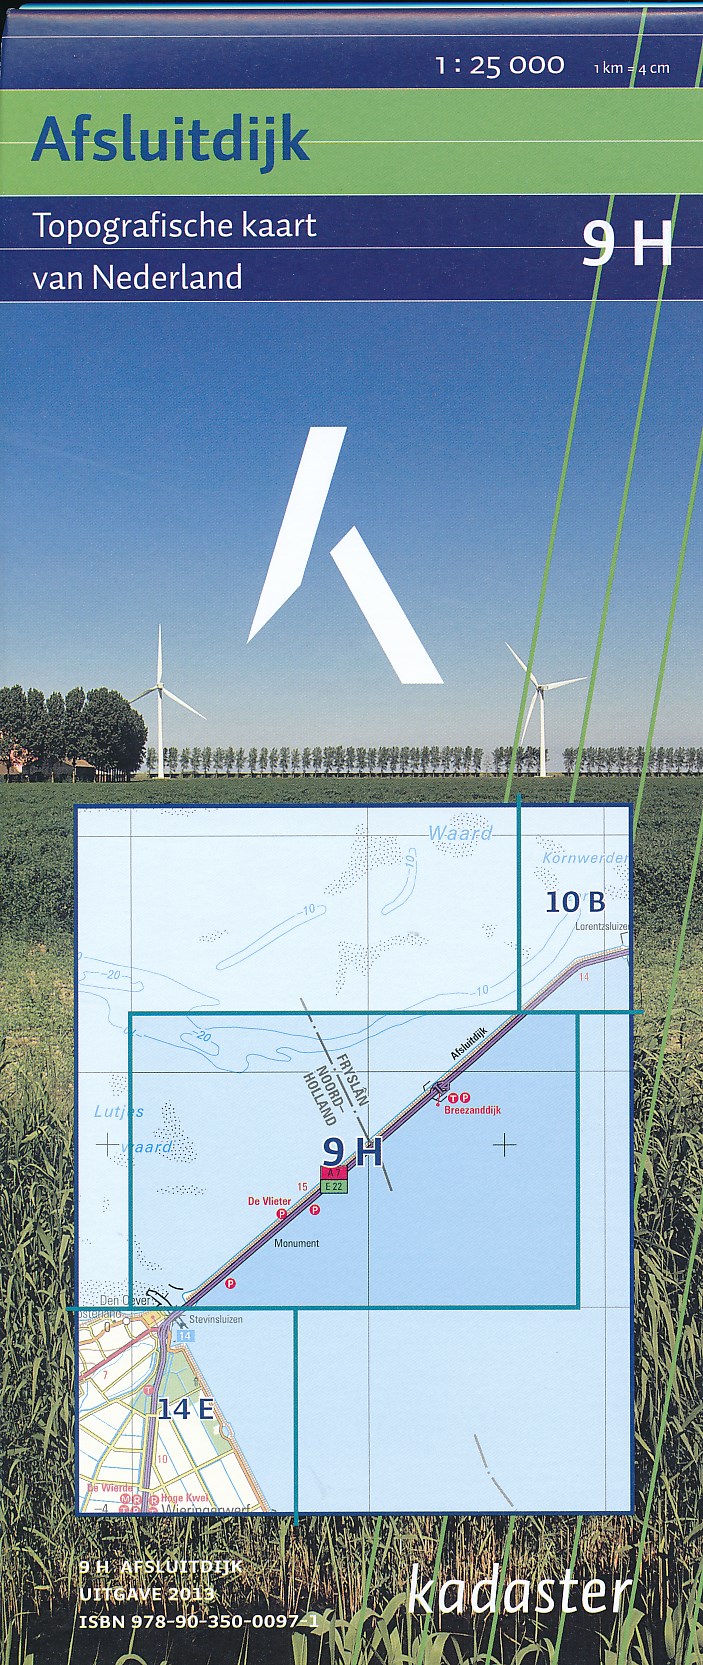 Online bestellen: Wandelkaart - Topografische kaart 9H Afsluitdijk | Kadaster